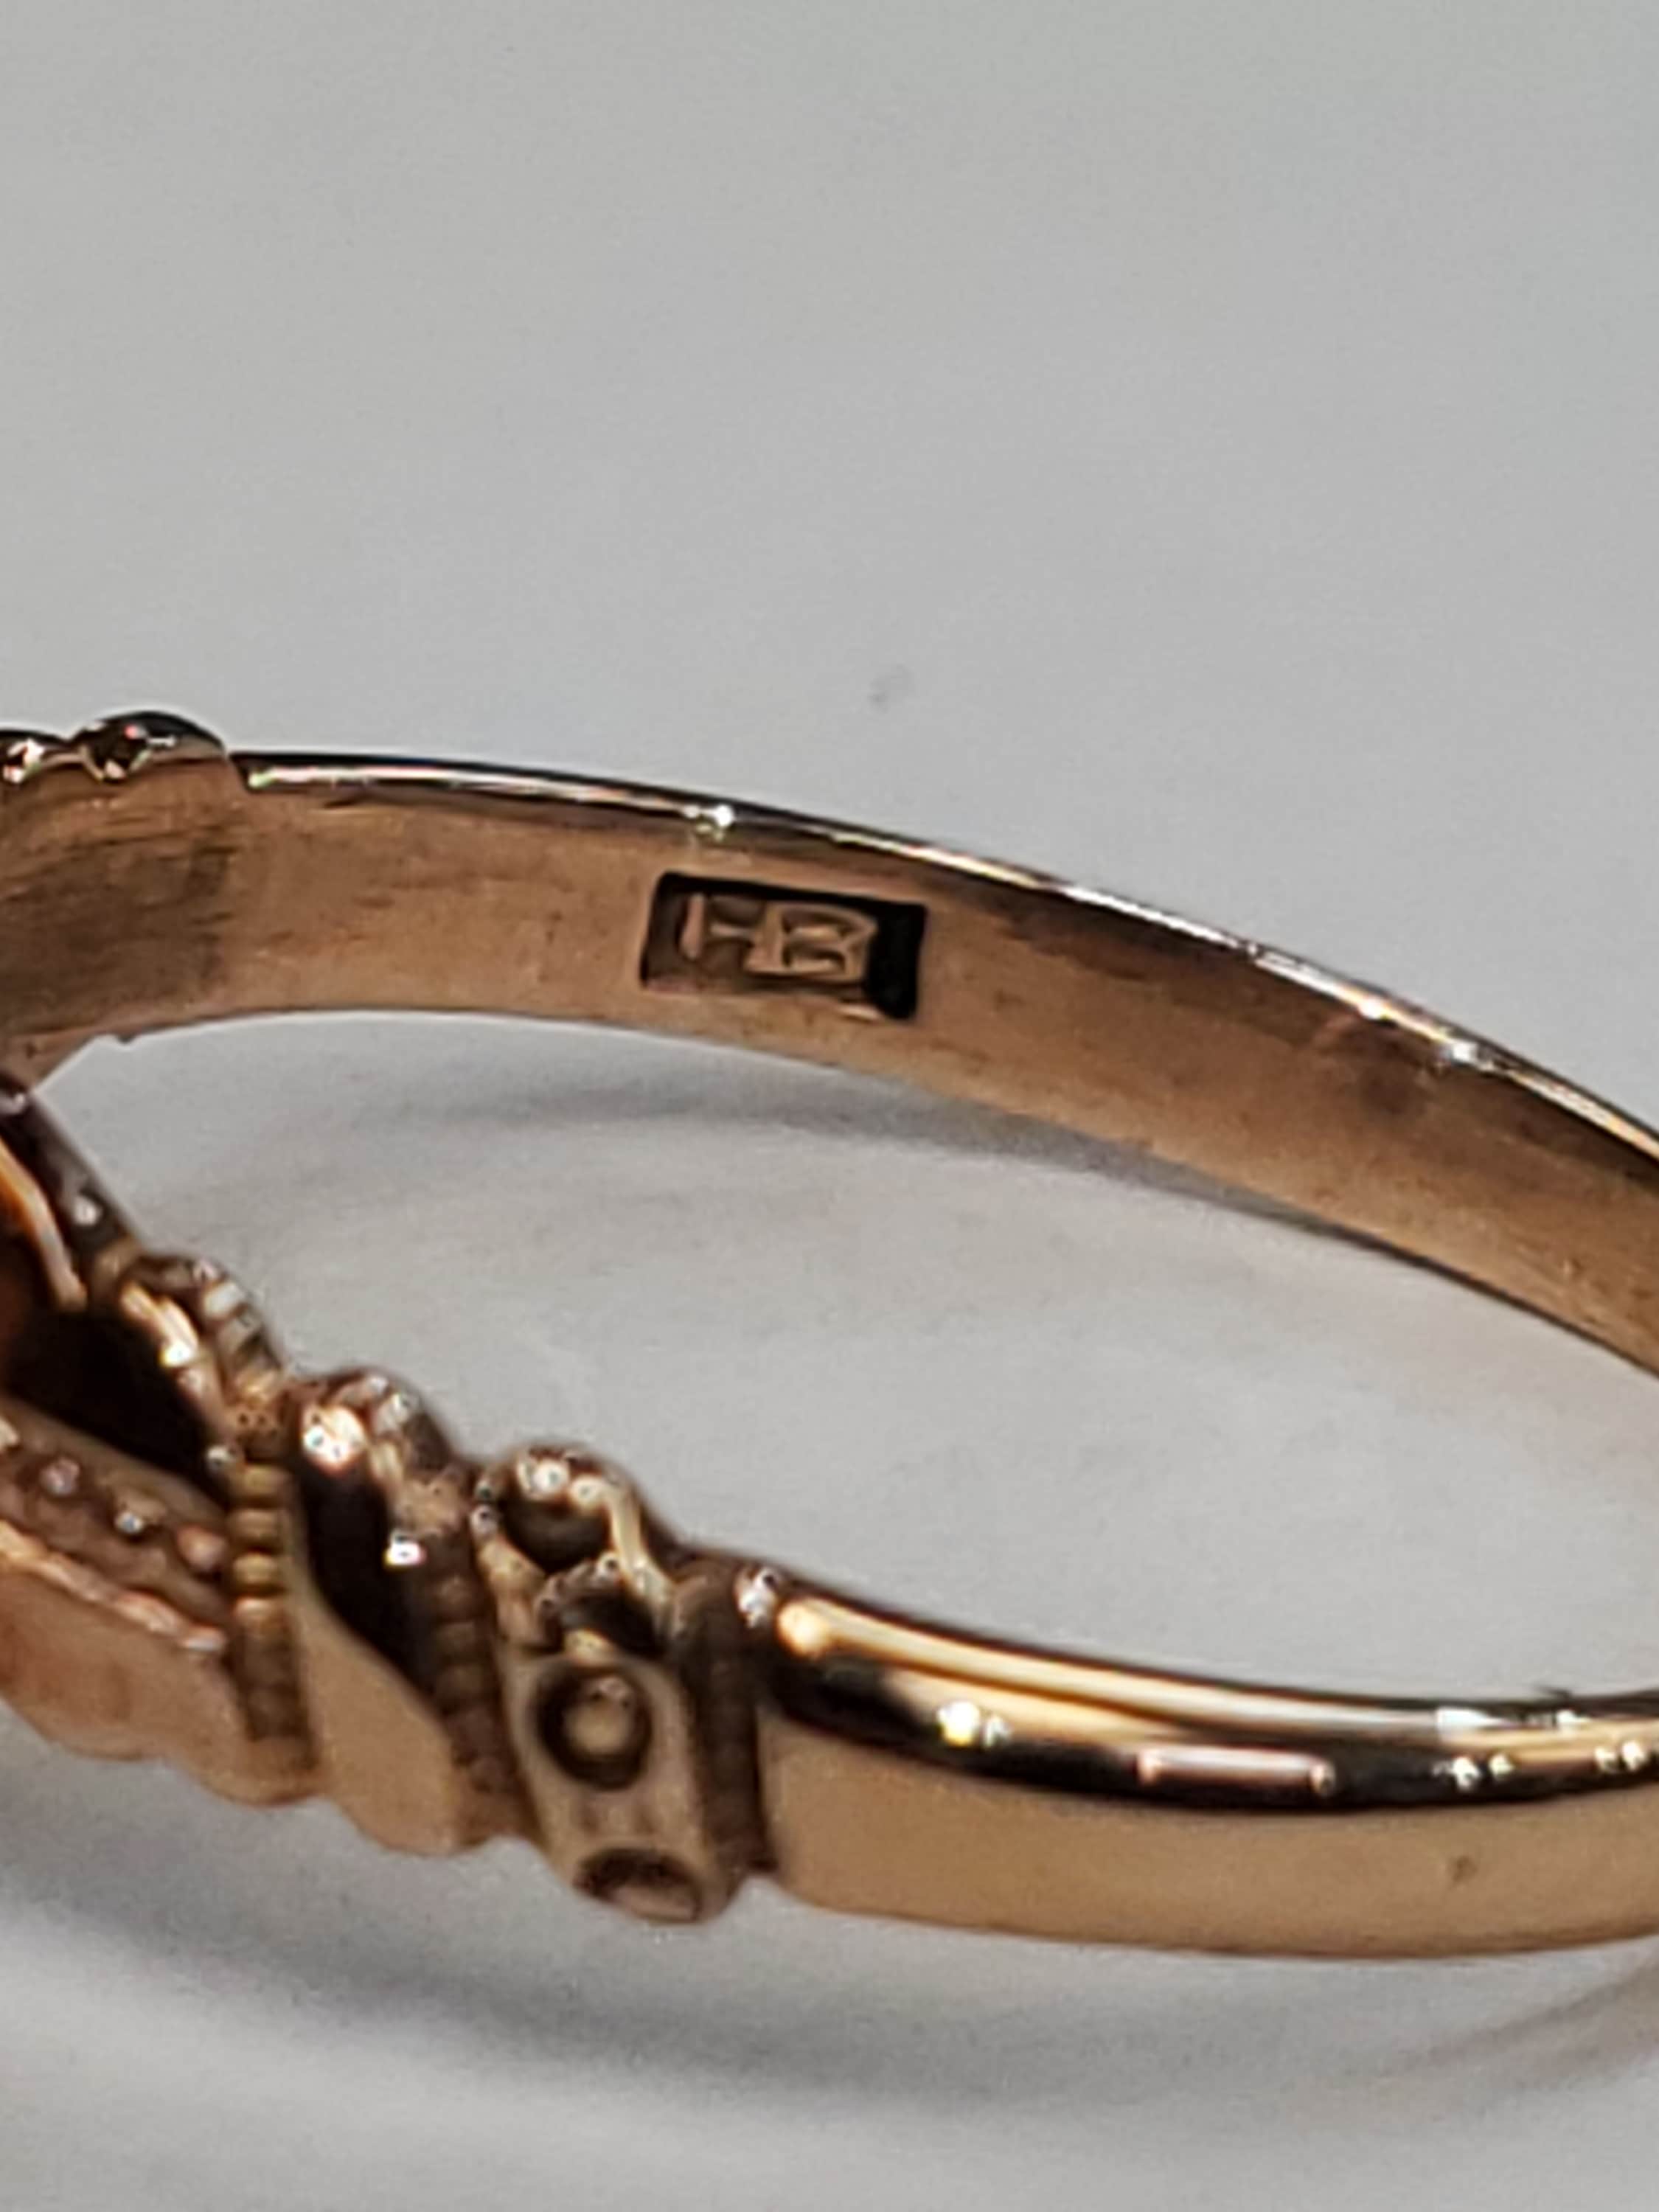 Product Image for Bernot & Heger antique garnet ring in 10k rose gold size 6.5